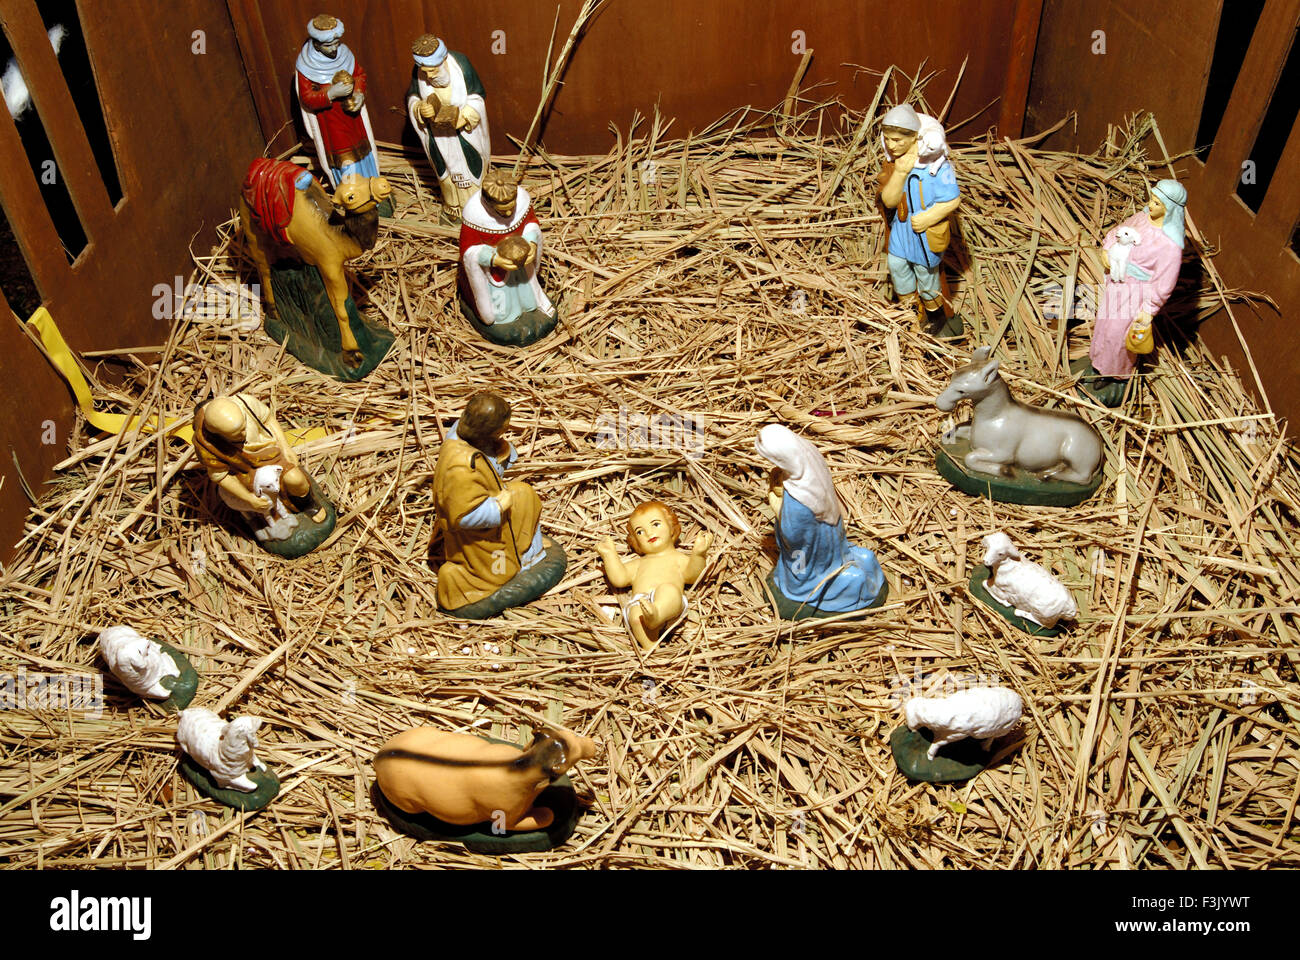 Tableaux de crèches montrant l'enfant Jésus dans une crèche avec Marie et Joseph lui adorateur Festival de Noël Mumbai Inde Banque D'Images